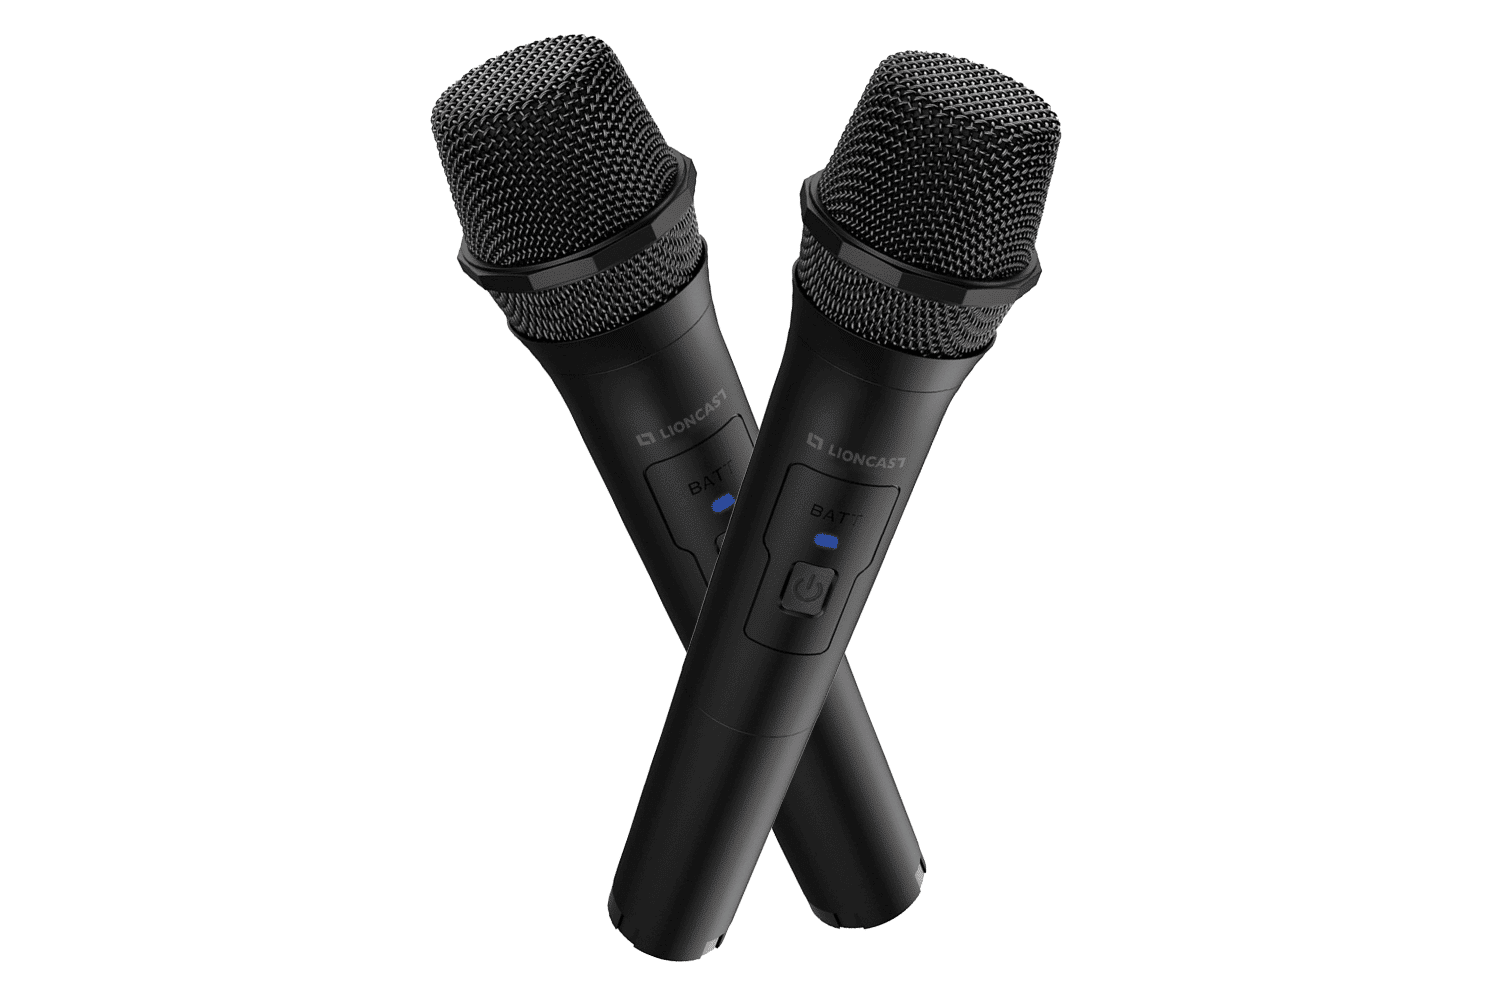 Lioncast 2x Microphone USB Universel Pour Karaoke et Enregistrement de  Son les Prix d'Occasion ou Neuf